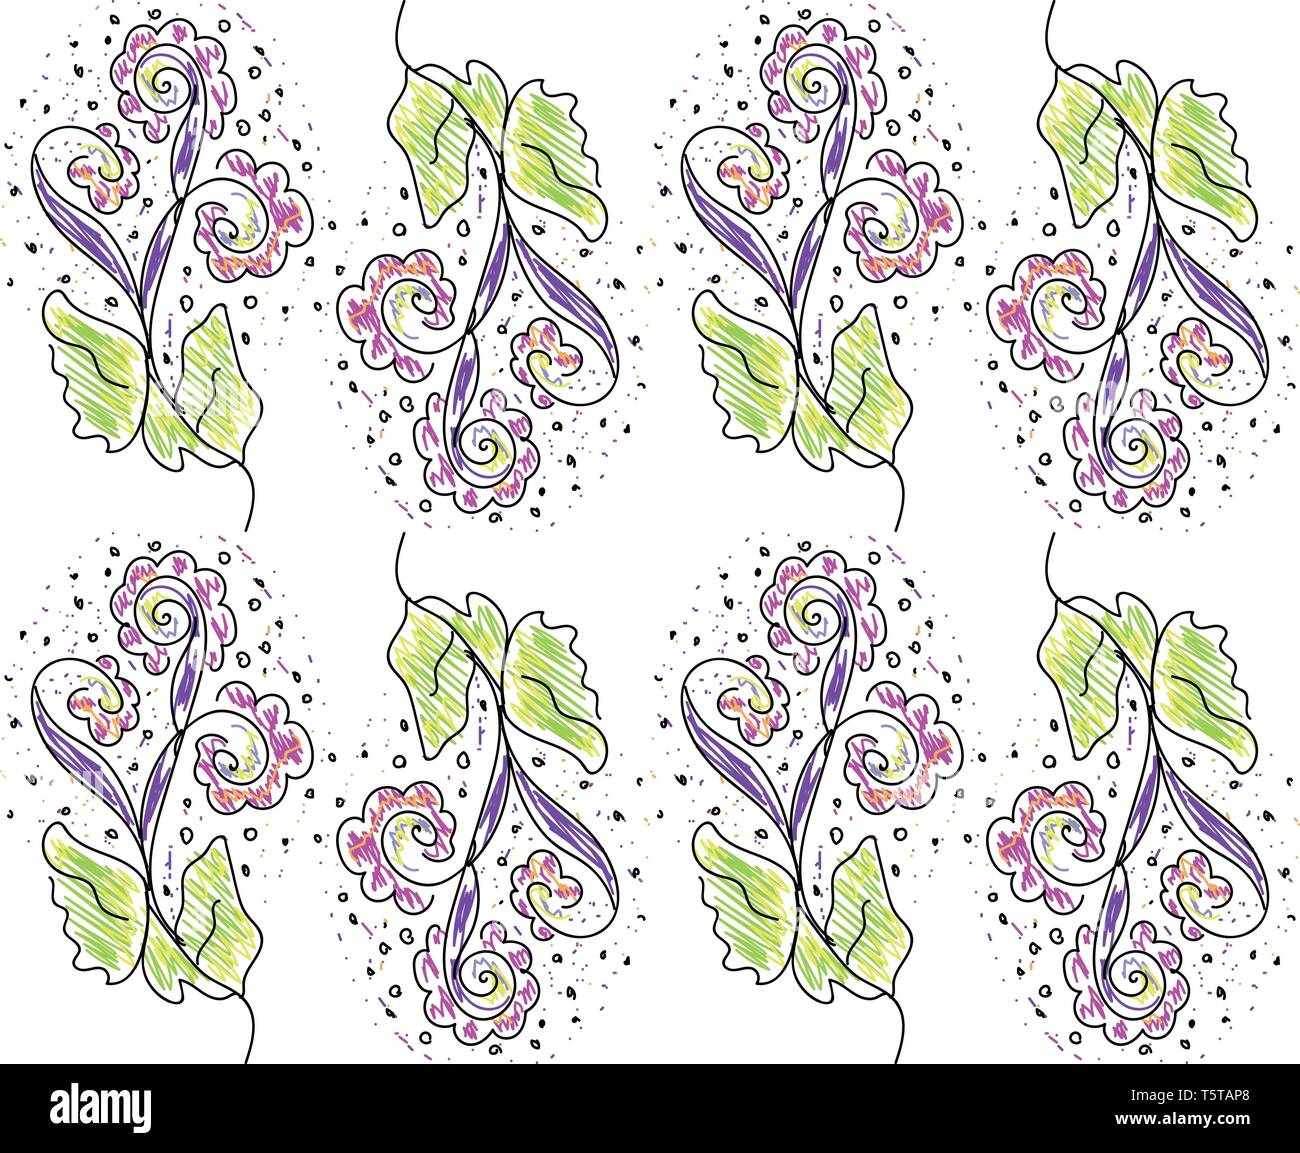 Die Textur von einem regelmäßigen Muster des Frühlings mit Blumen in mehreren Farben vector Farbe, Zeichnung oder Abbildung Stock Vektor